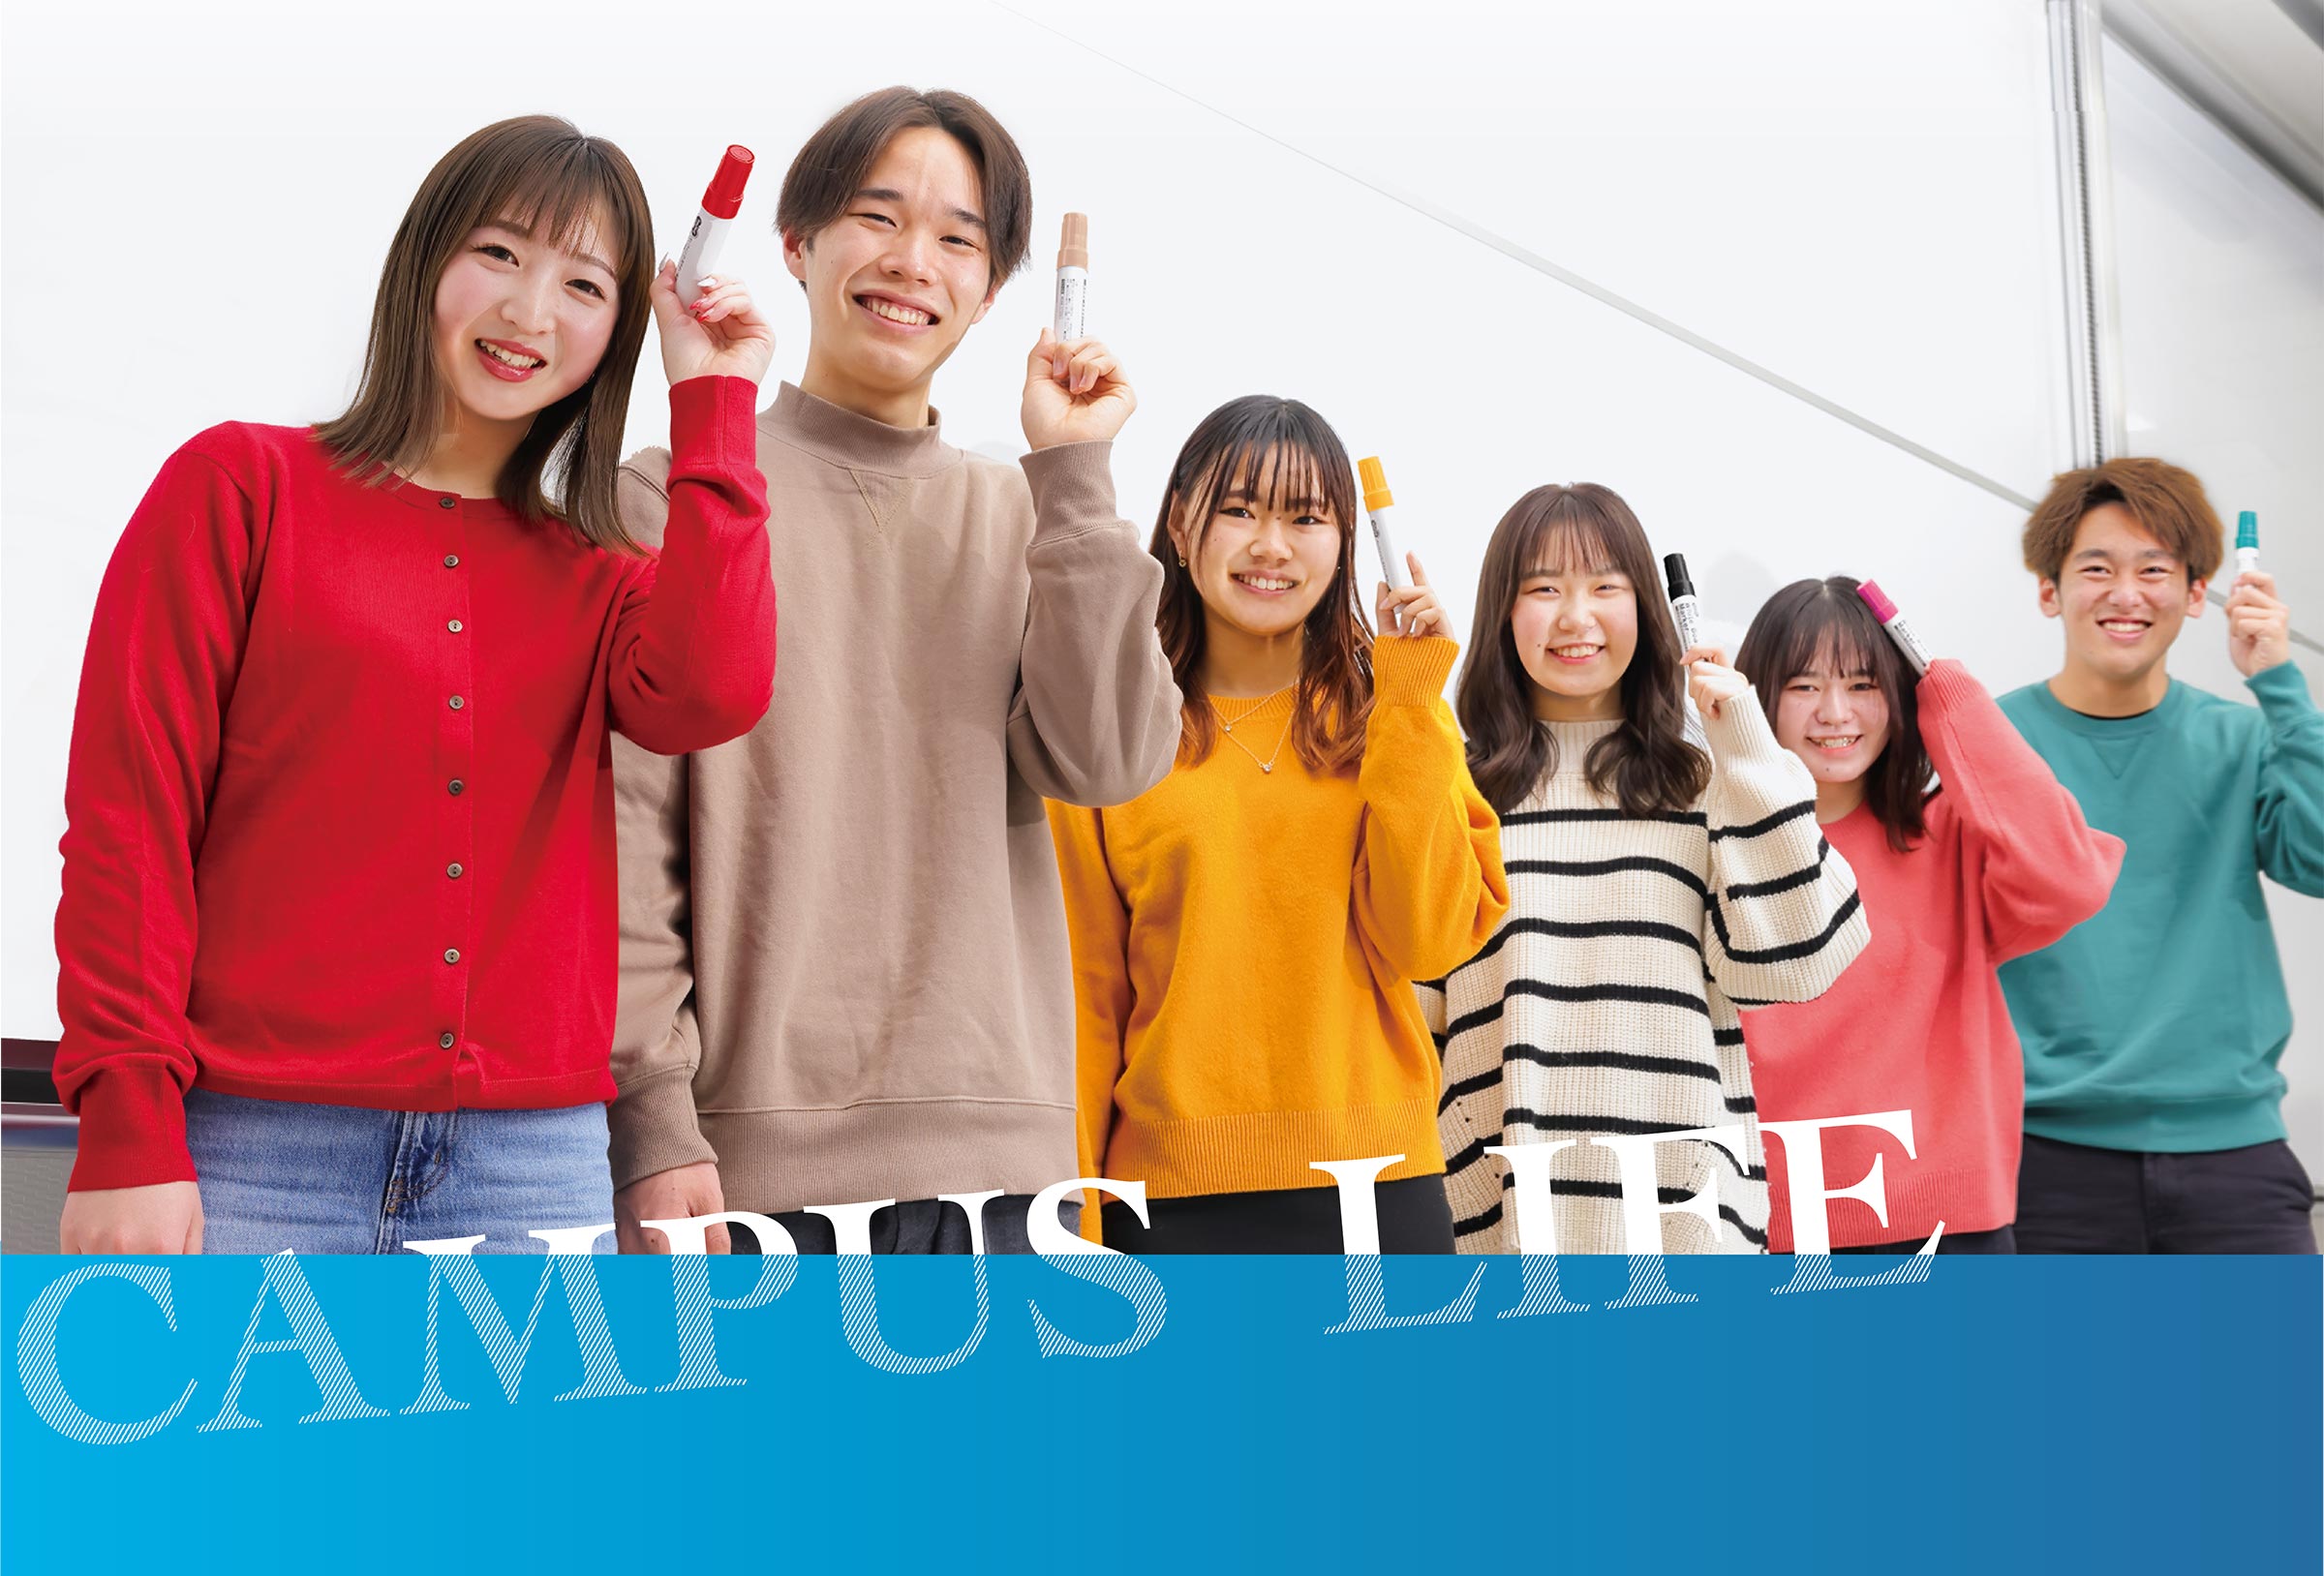 キャンパスライフ - 京都経済短期大学